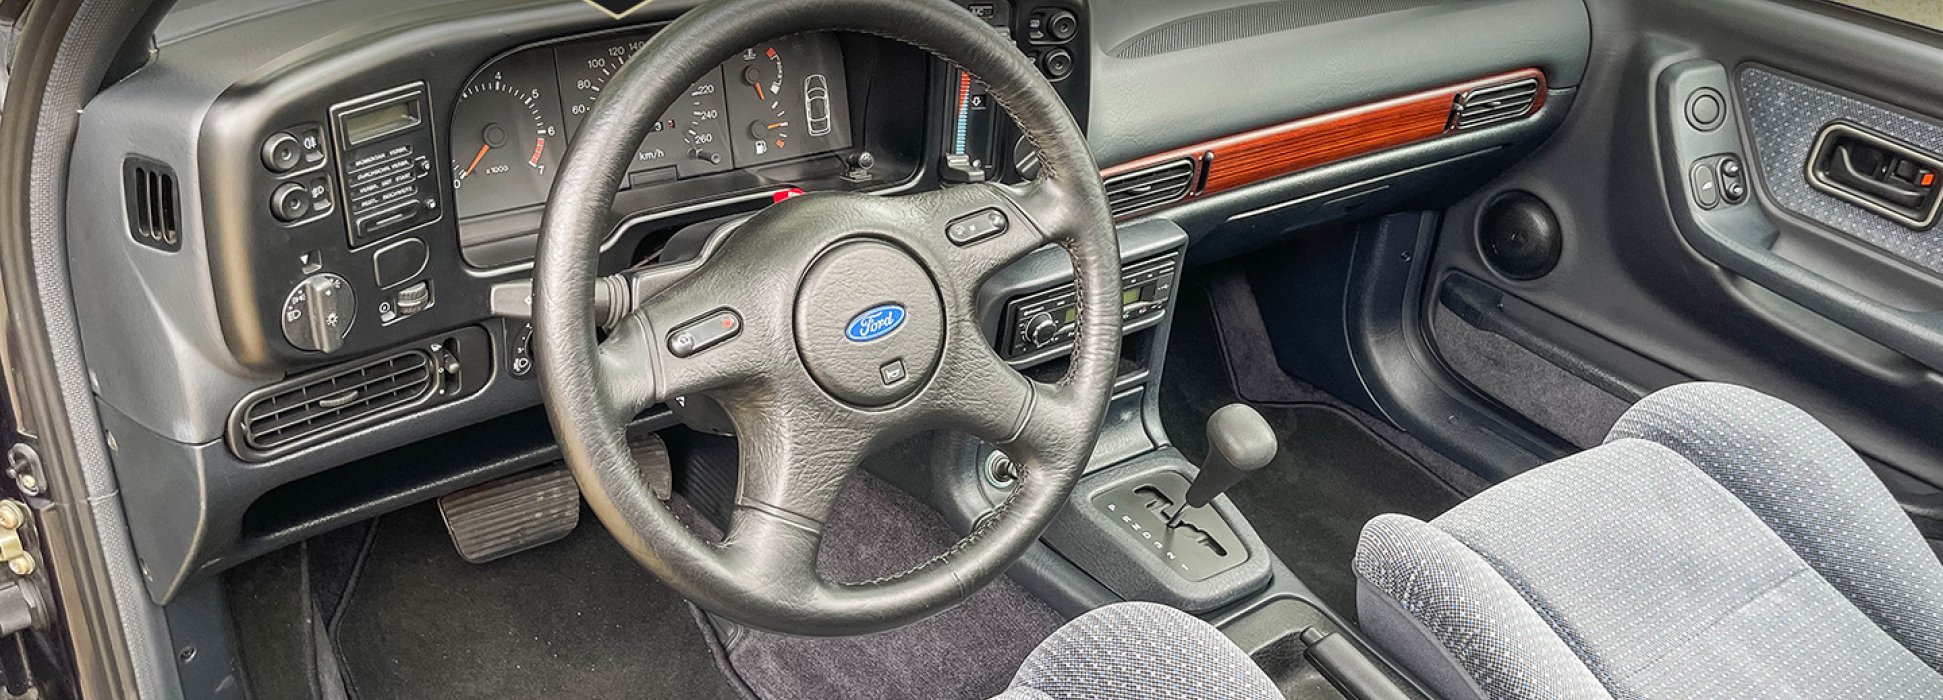 Ford Scorpio  2,9i Ghia Cosworth 6